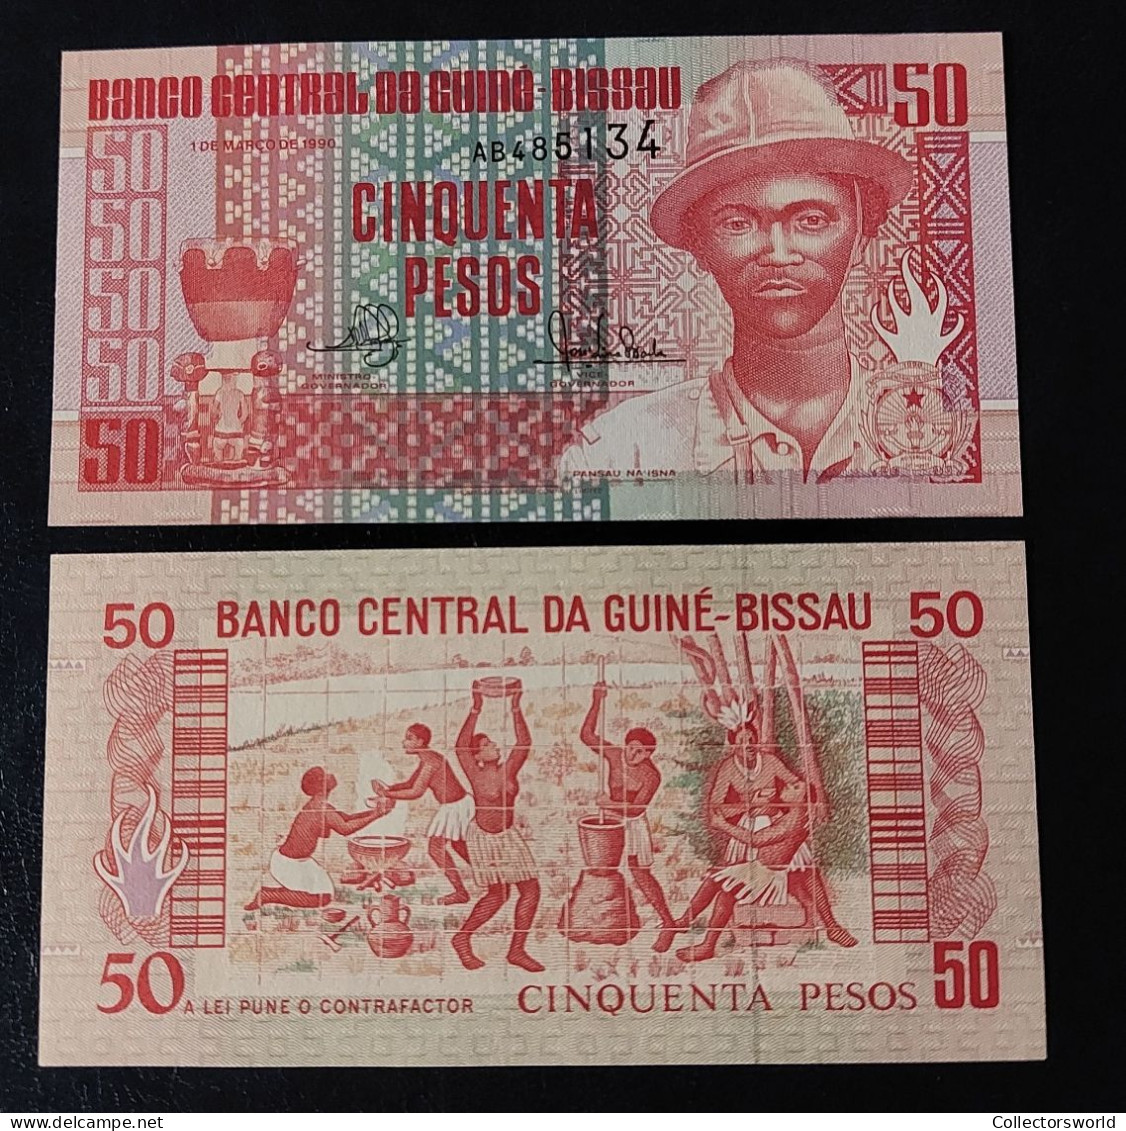 Guinee Bissau 50 Pesos 1990 P10 UNC - Guinea-Bissau